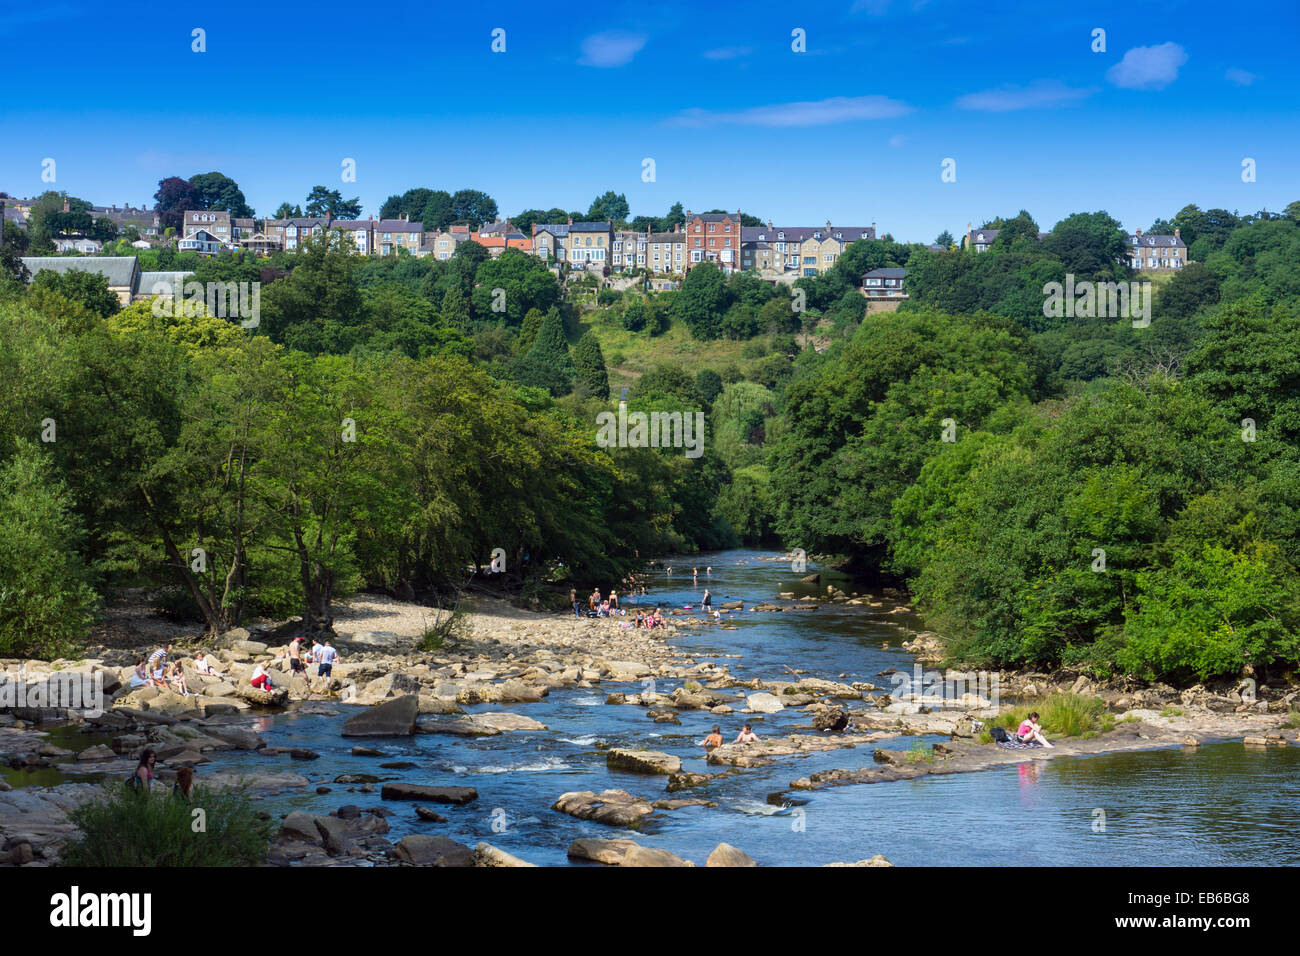 Le persone che giocano in acqua, estate sul fiume Swale, con alberi verdi e la linea di case al di sopra di Richmond, North Yorkshire, Inghilterra Foto Stock